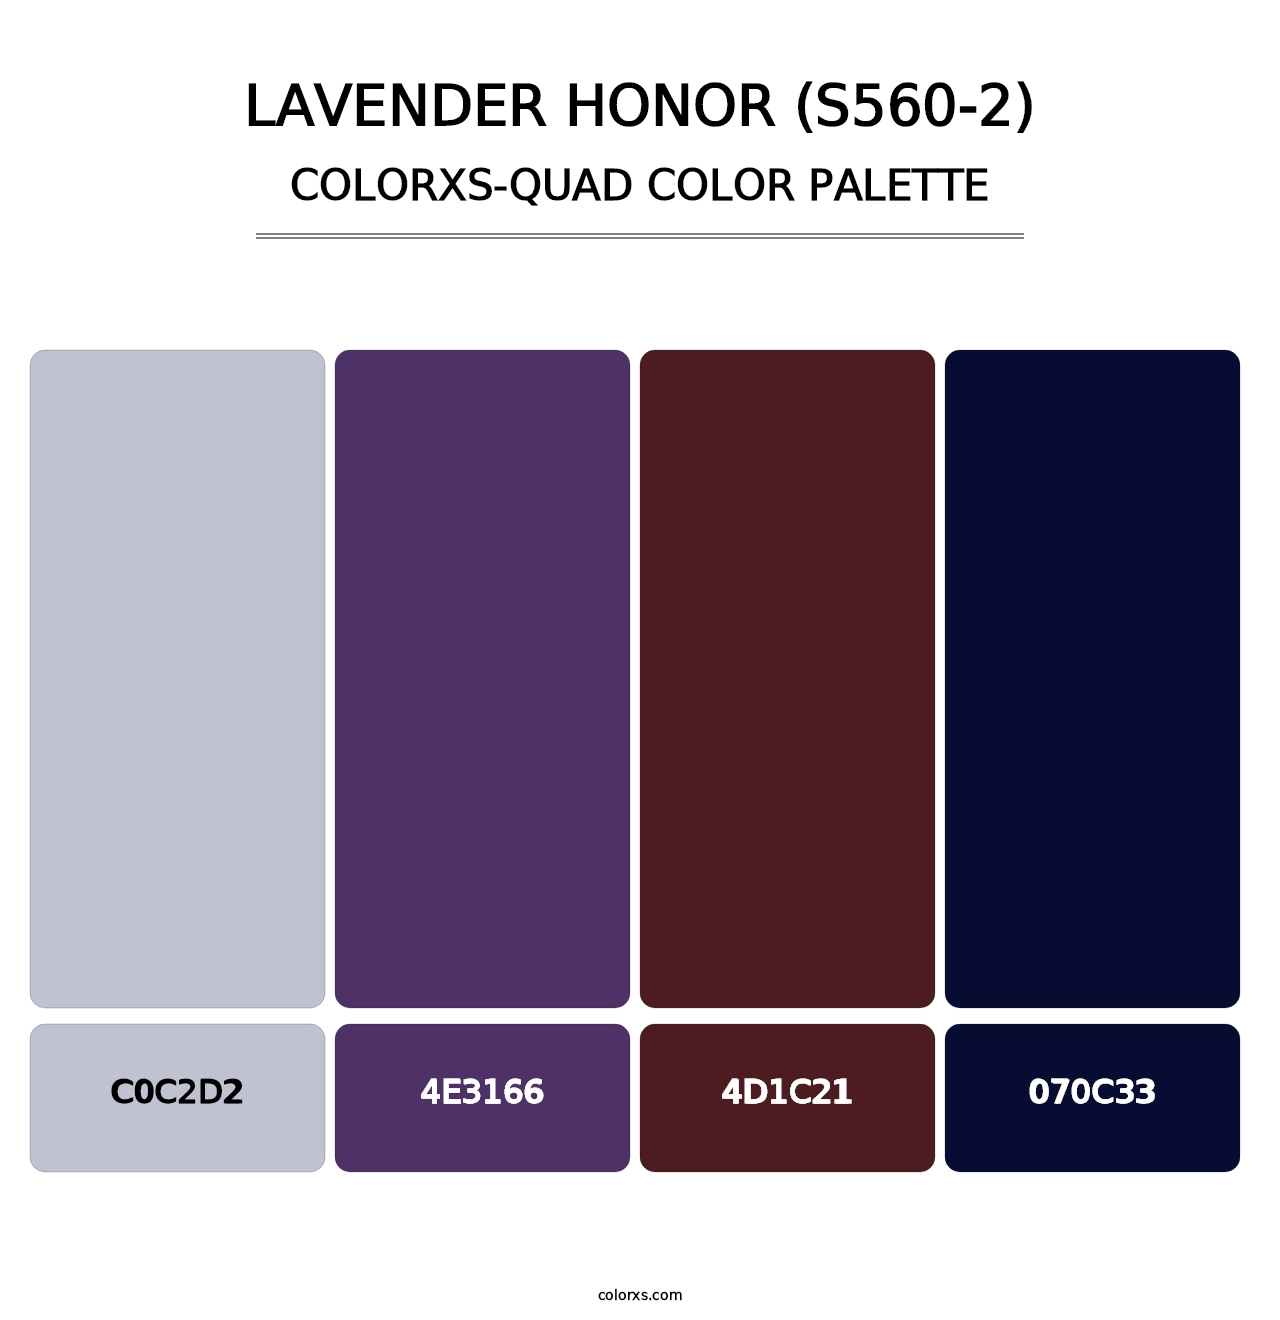 Lavender Honor (S560-2) - Colorxs Quad Palette